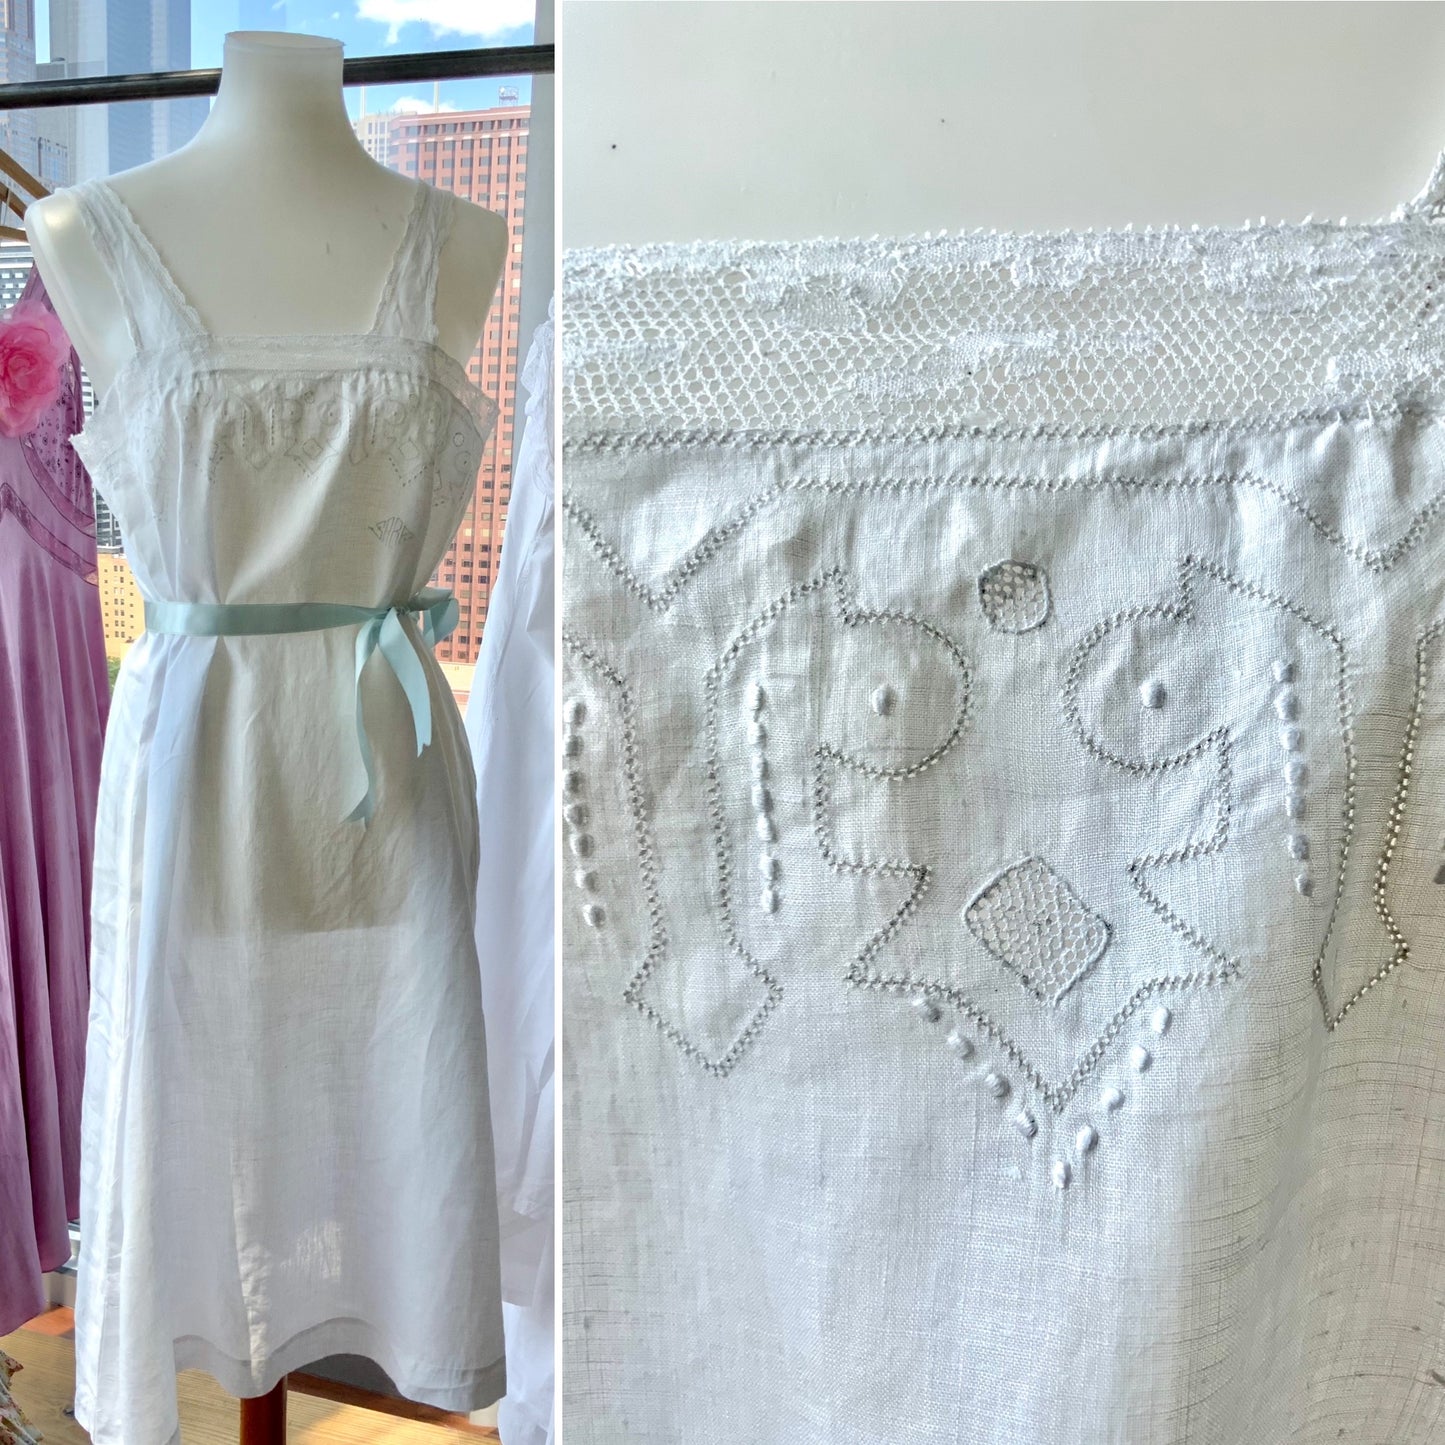 Antique Cotton Dress - 1900